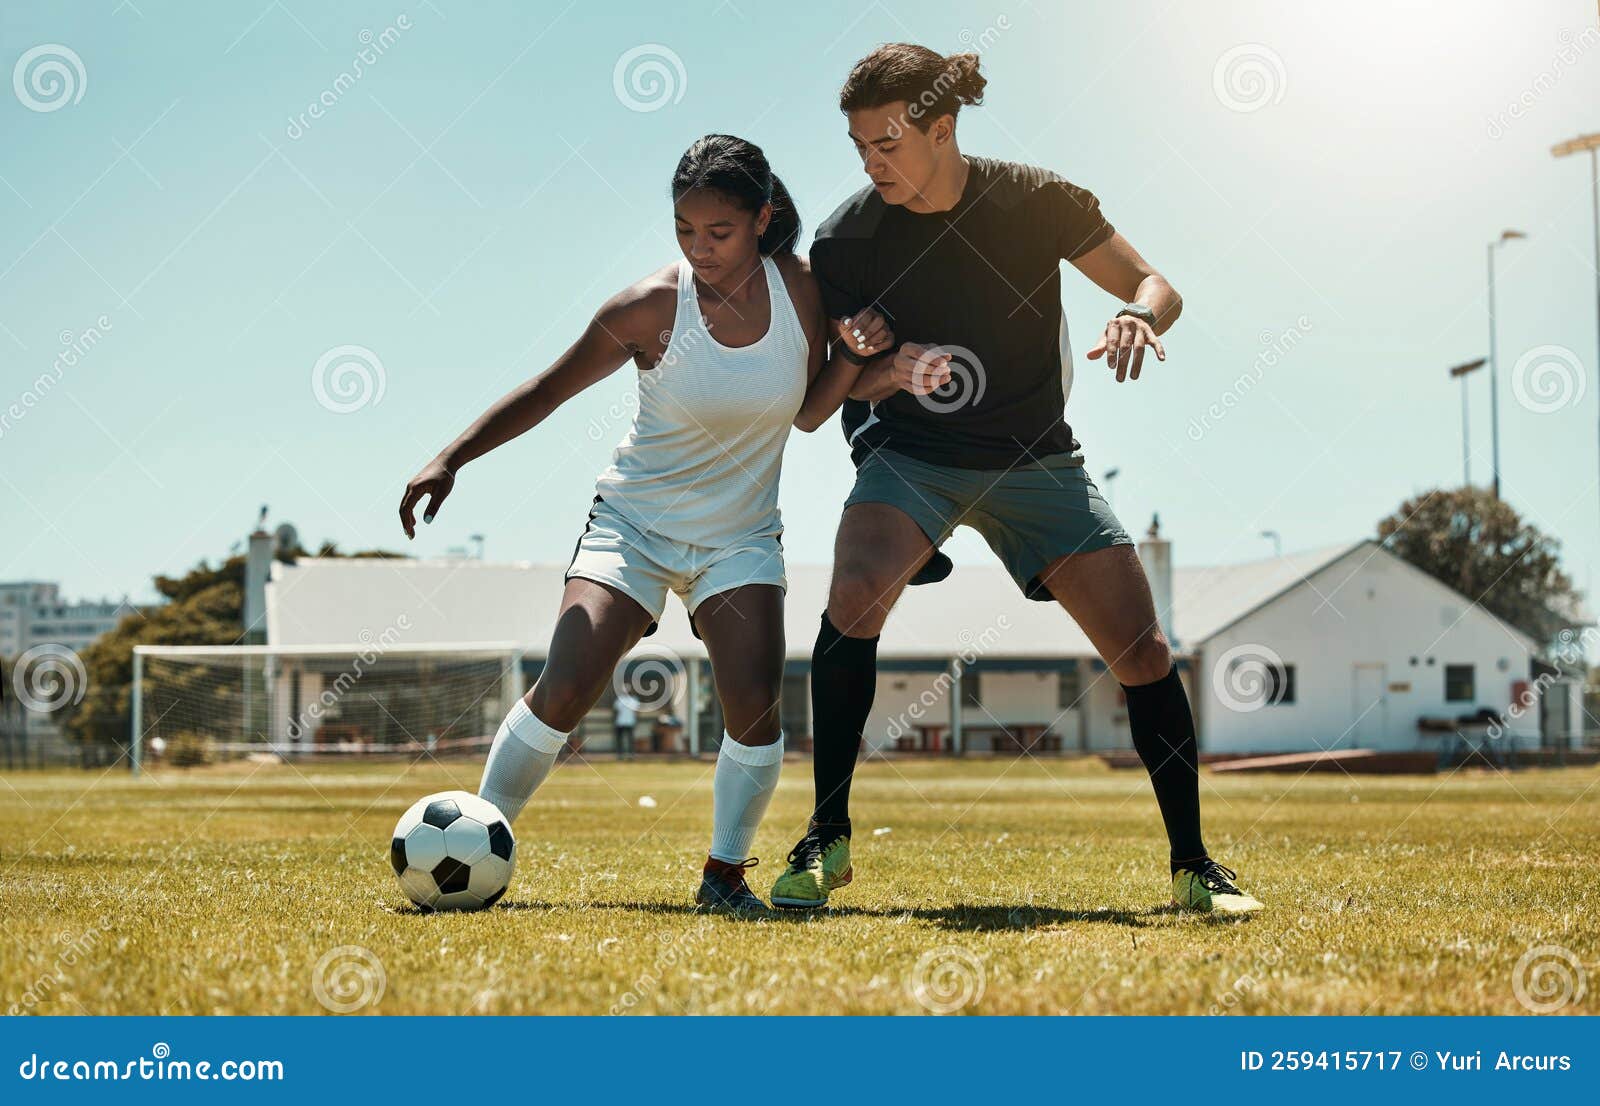 Futebol: exercícios e treinos- tiroteio